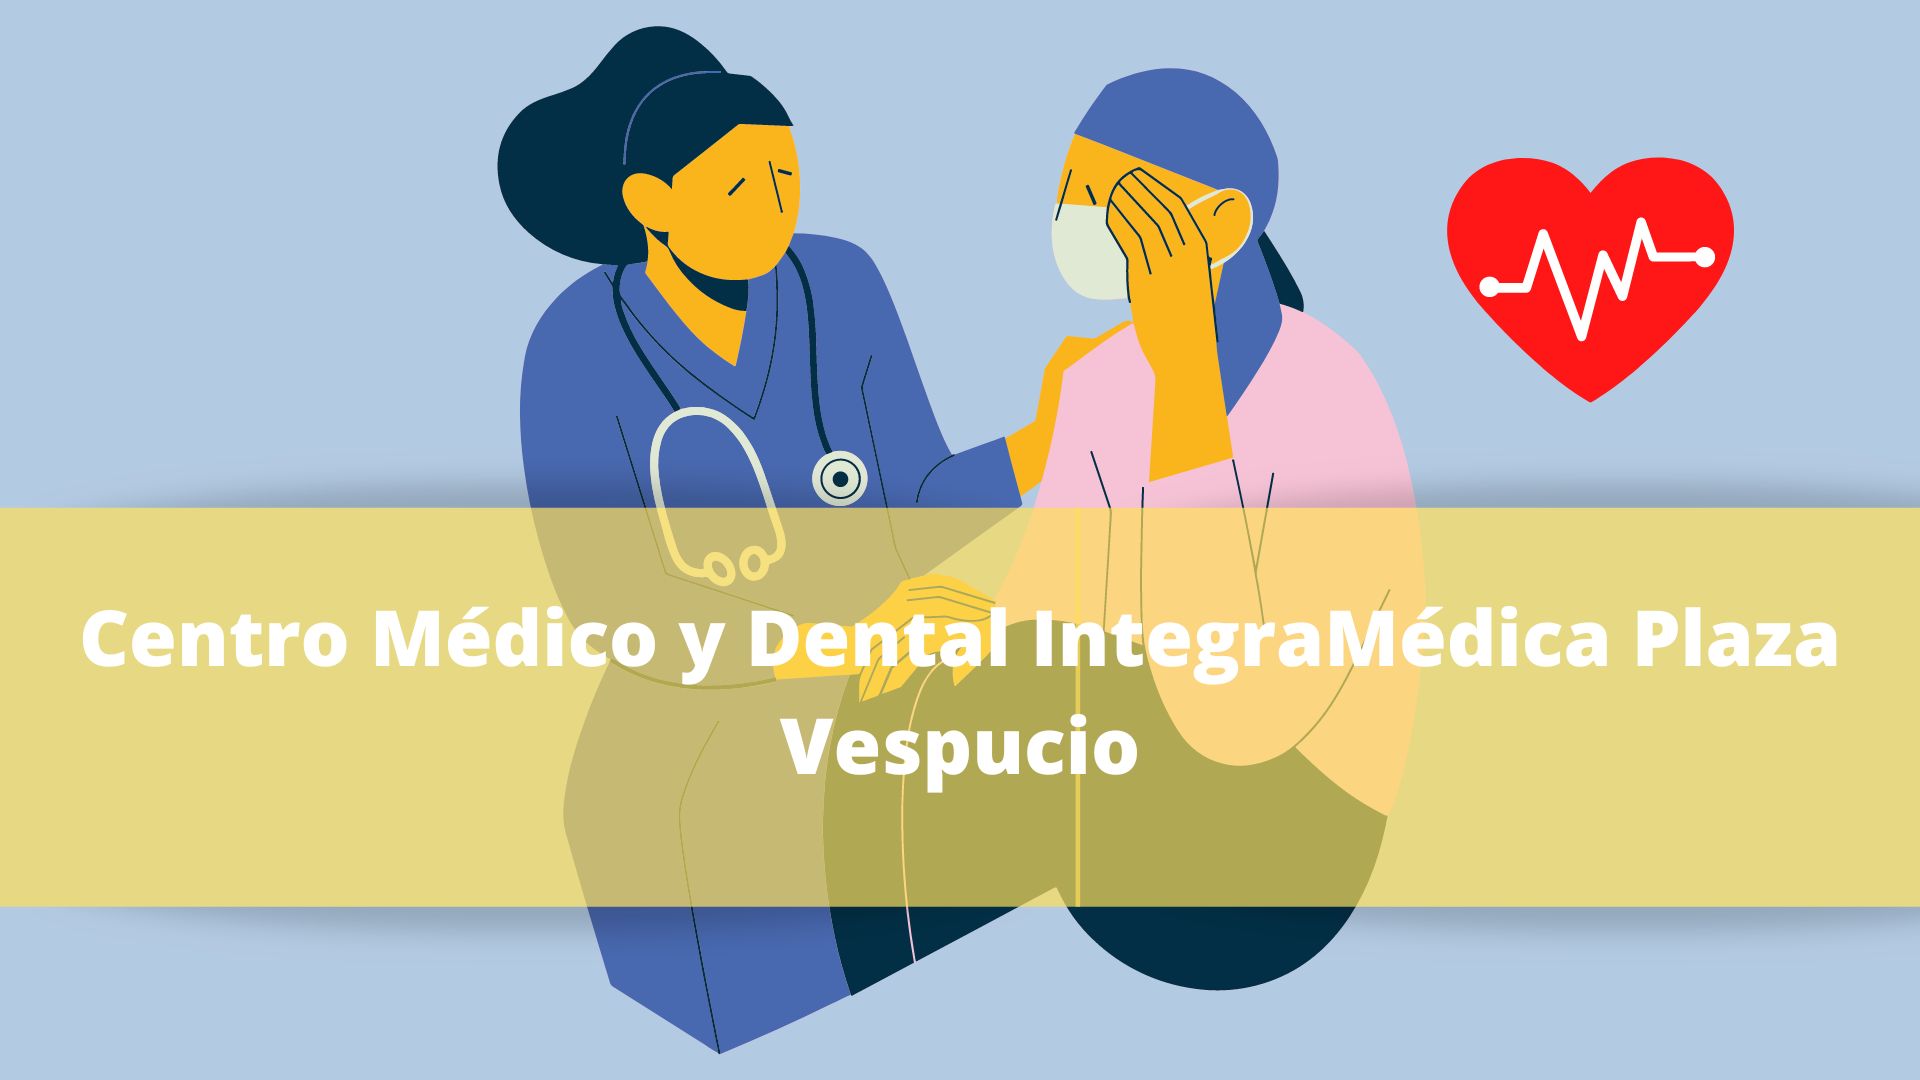 Centro Médico y Dental IntegraMédica Plaza Vespucio